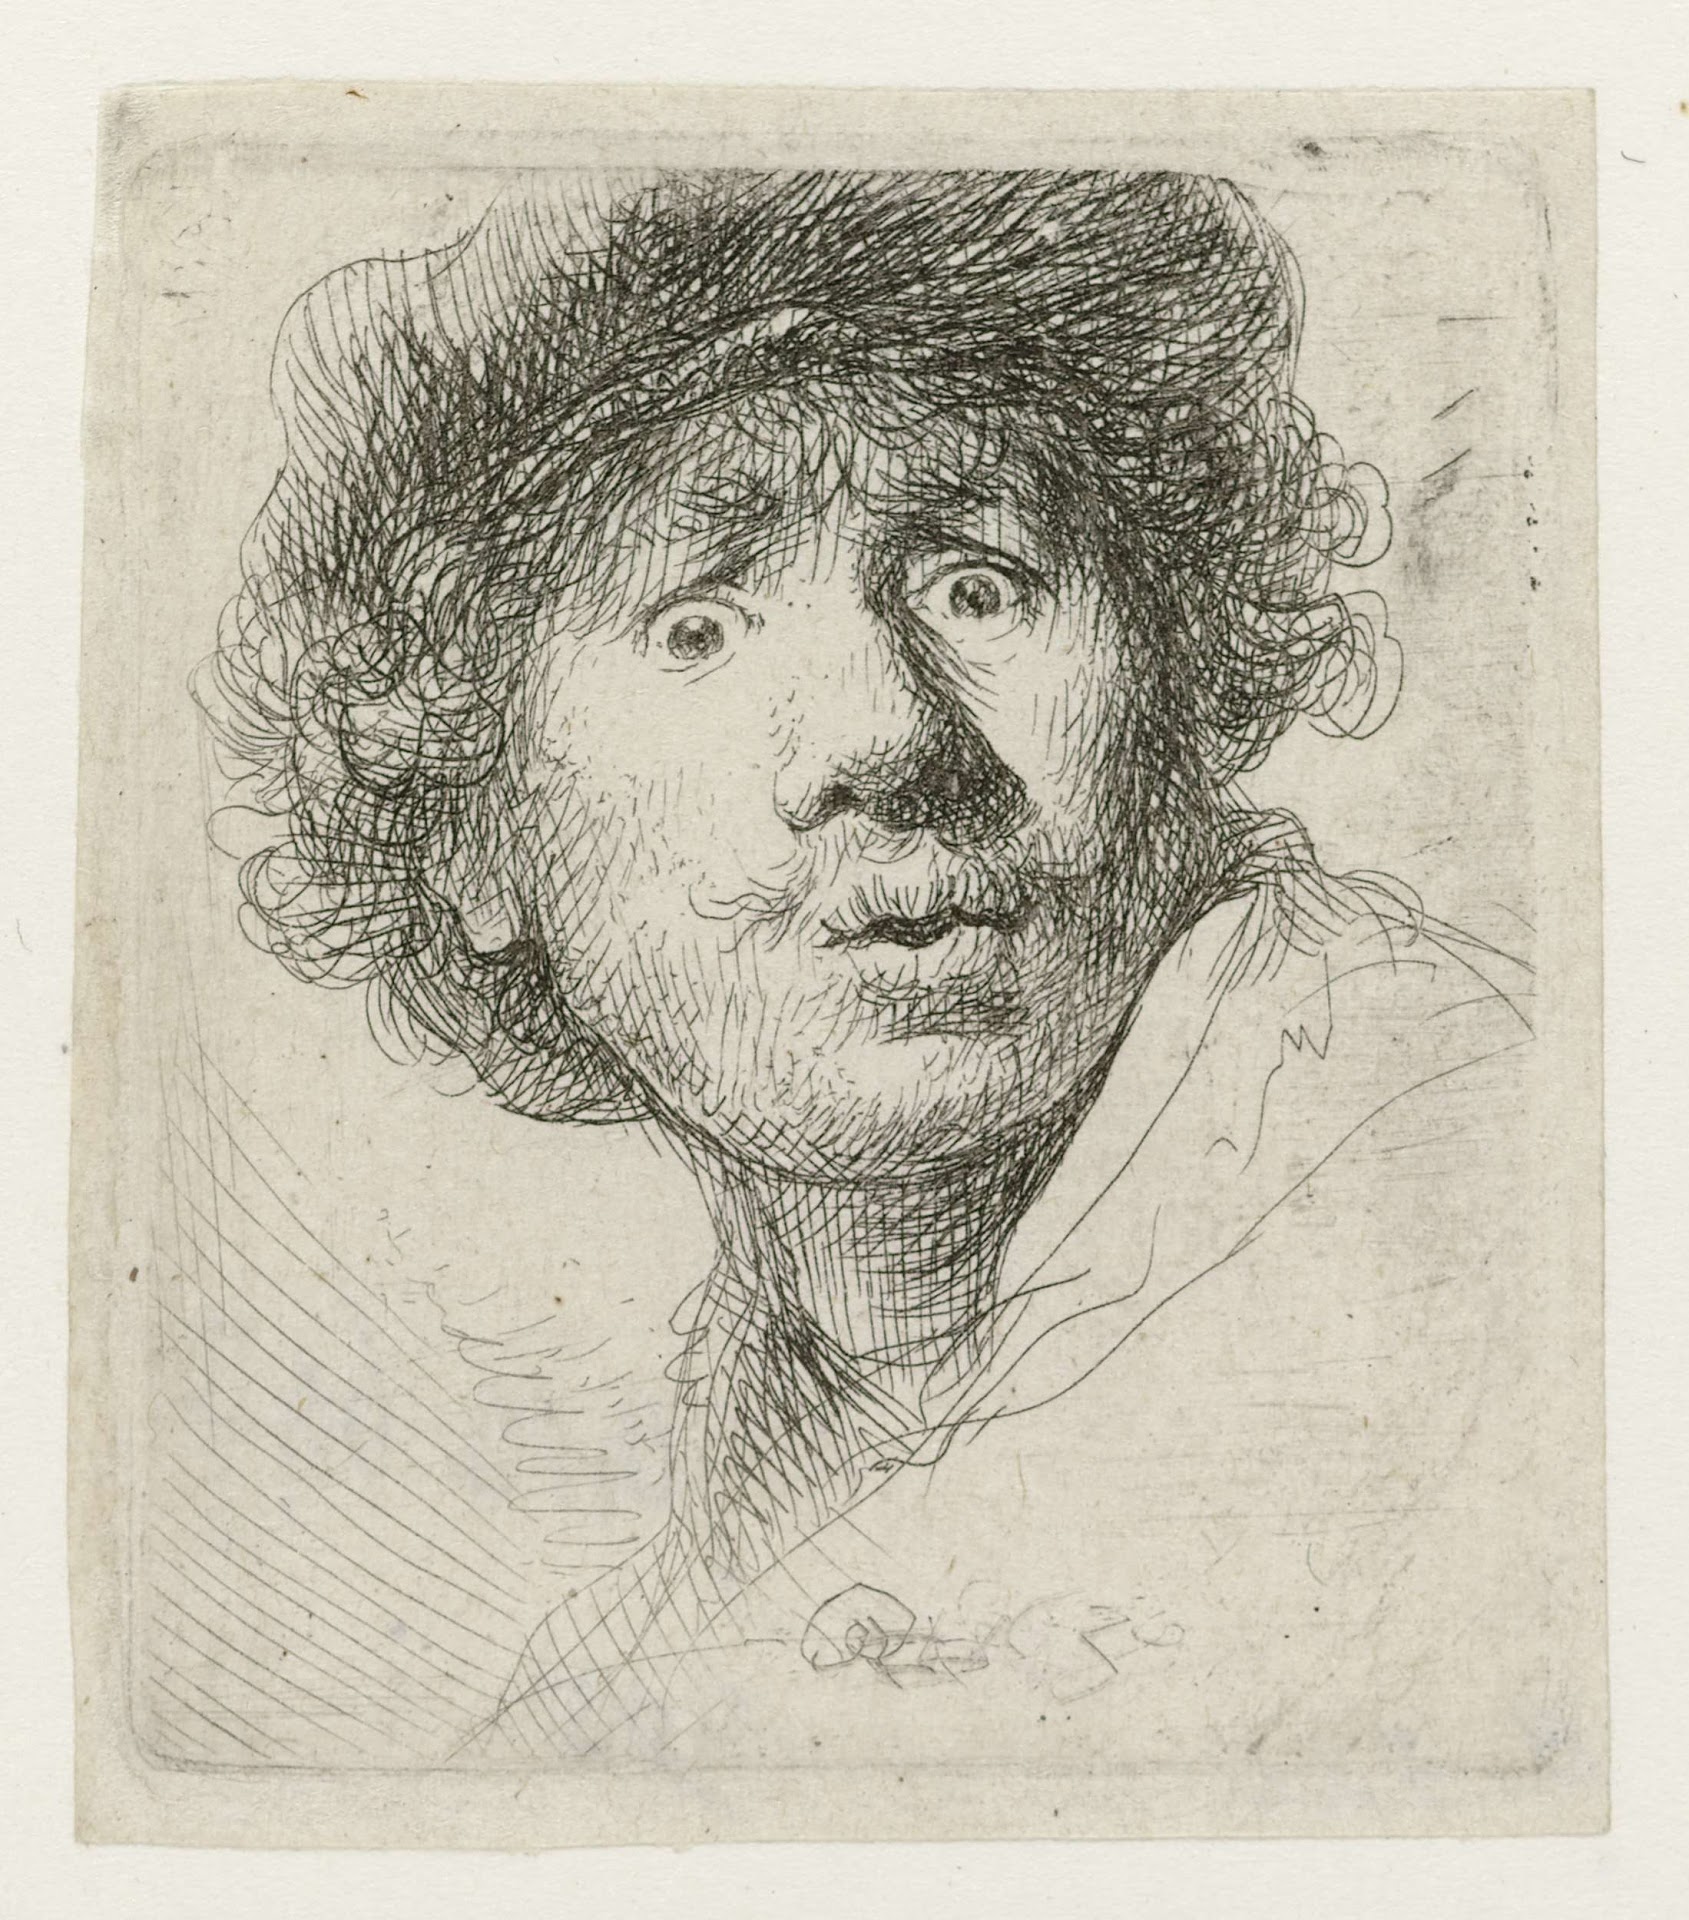 Geniş Açık Gözlü Otoportre by Rembrandt van Rijn - 1630 - 51 x 46mm 